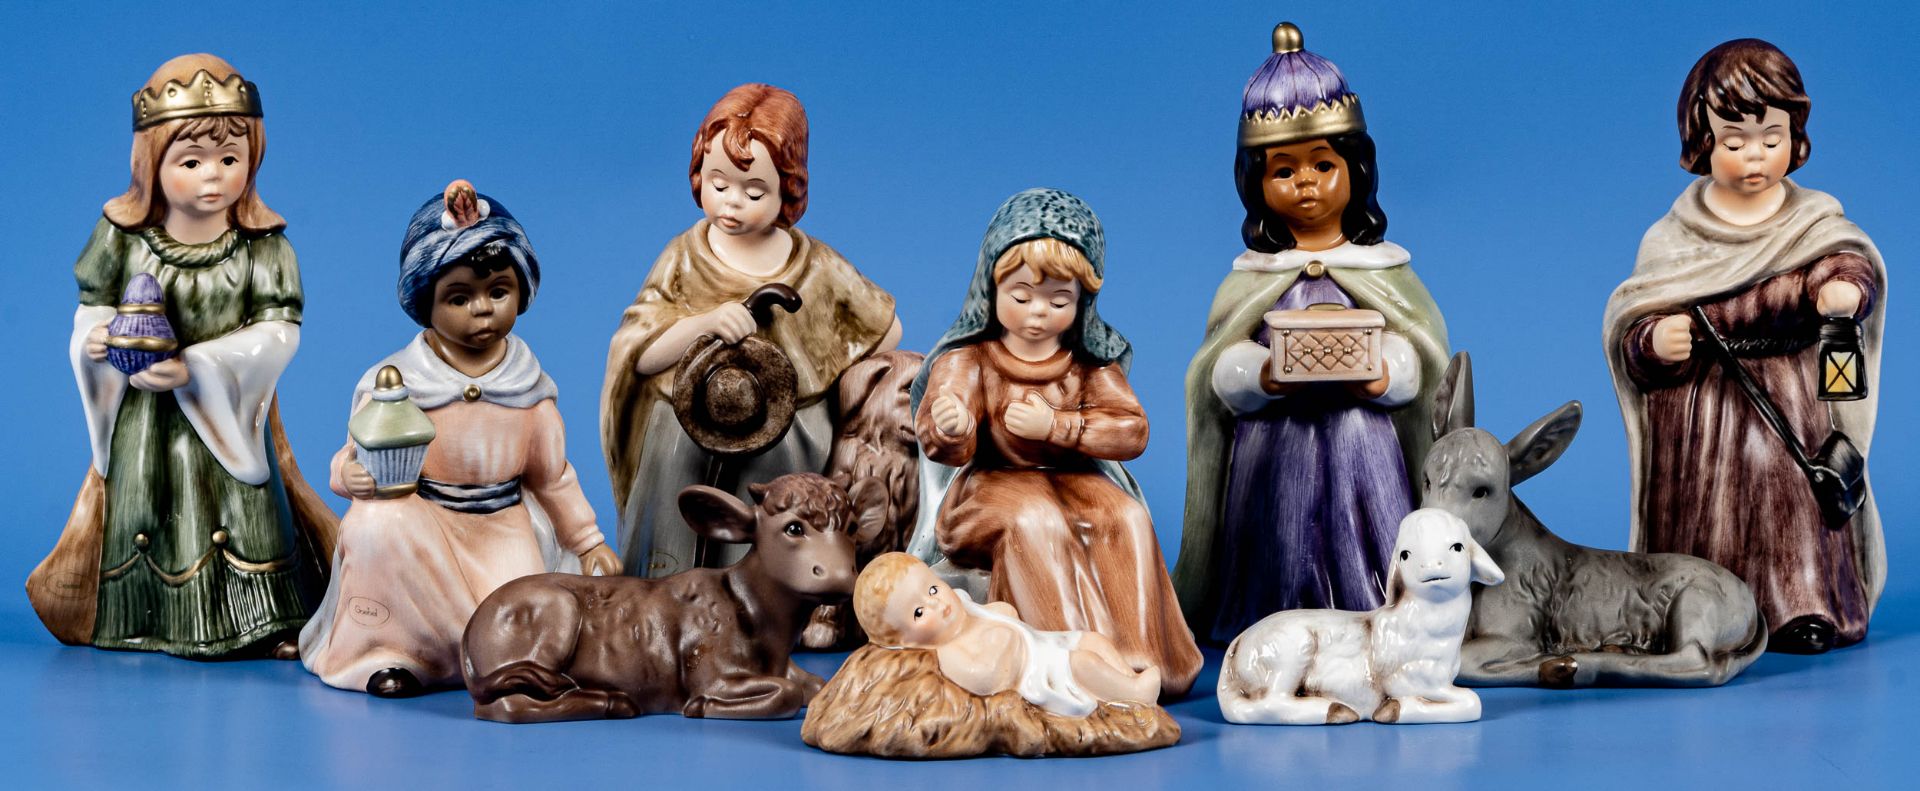 10teiliges Set weihnachtlicher Krippenfiguren, Goebel-Porzellan, versch. farbig staffiertes Porzell - Image 2 of 4